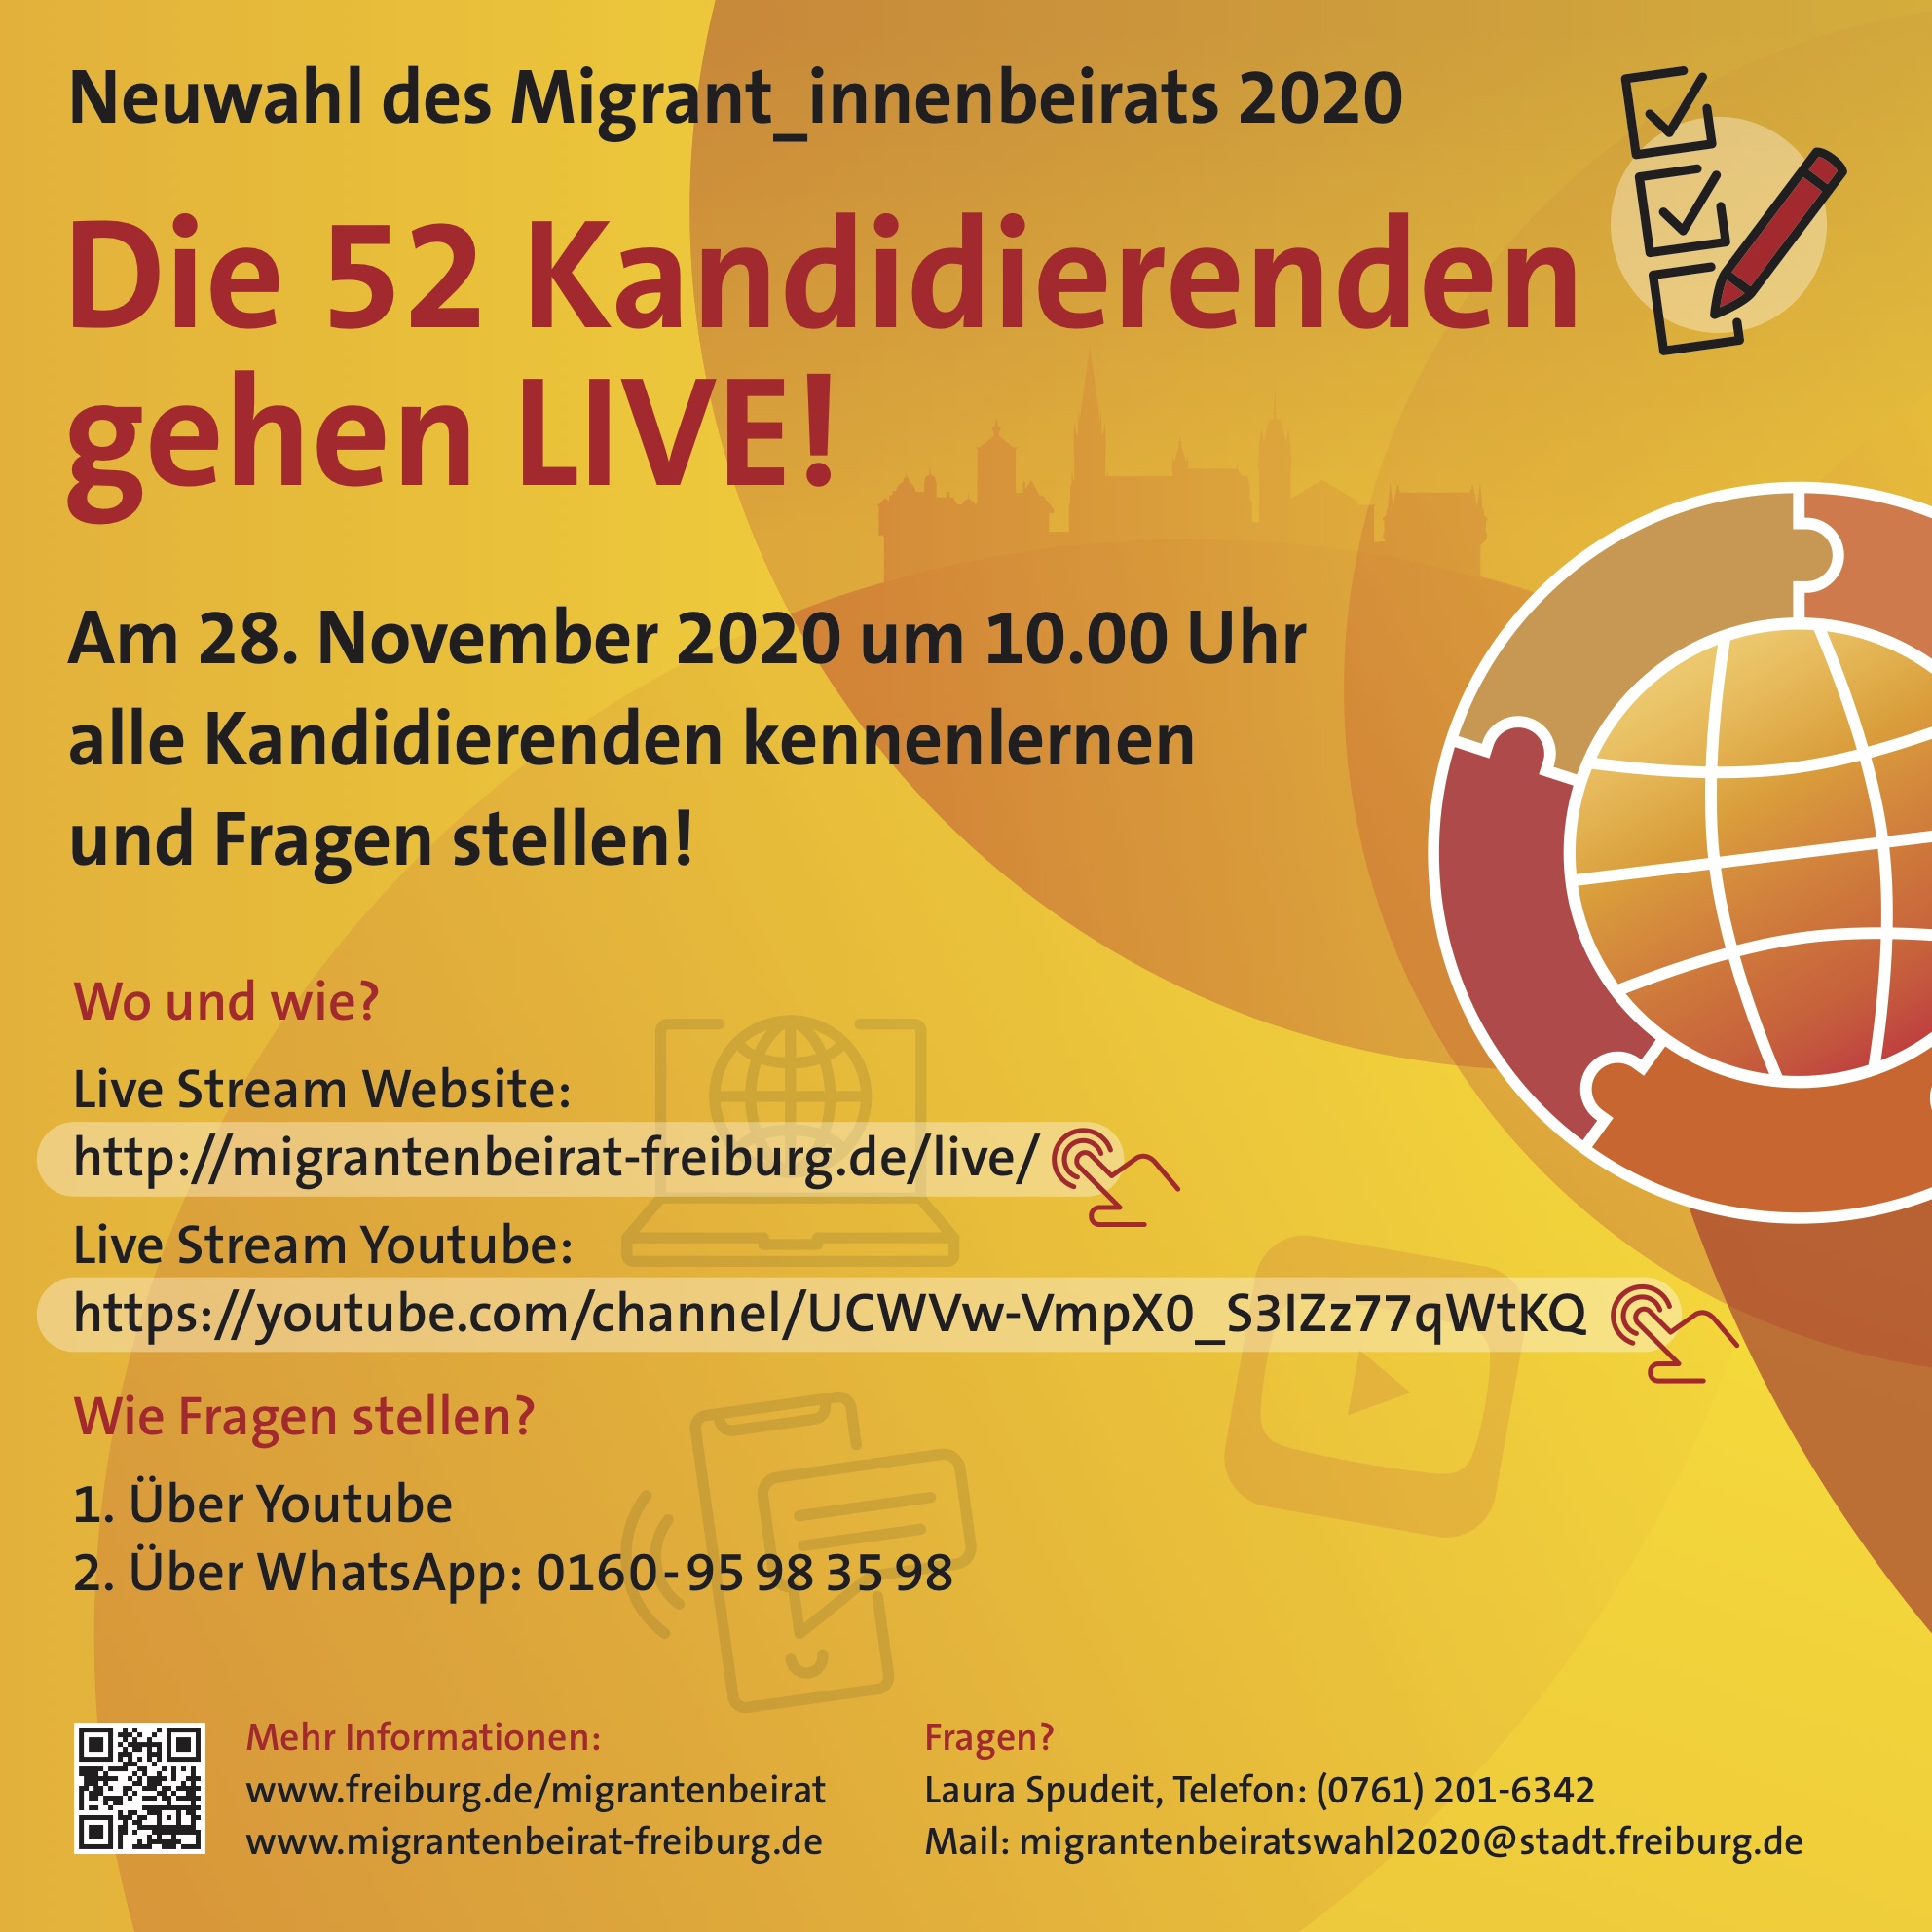 Migrant_innenbeirat Wahl 2020 Live